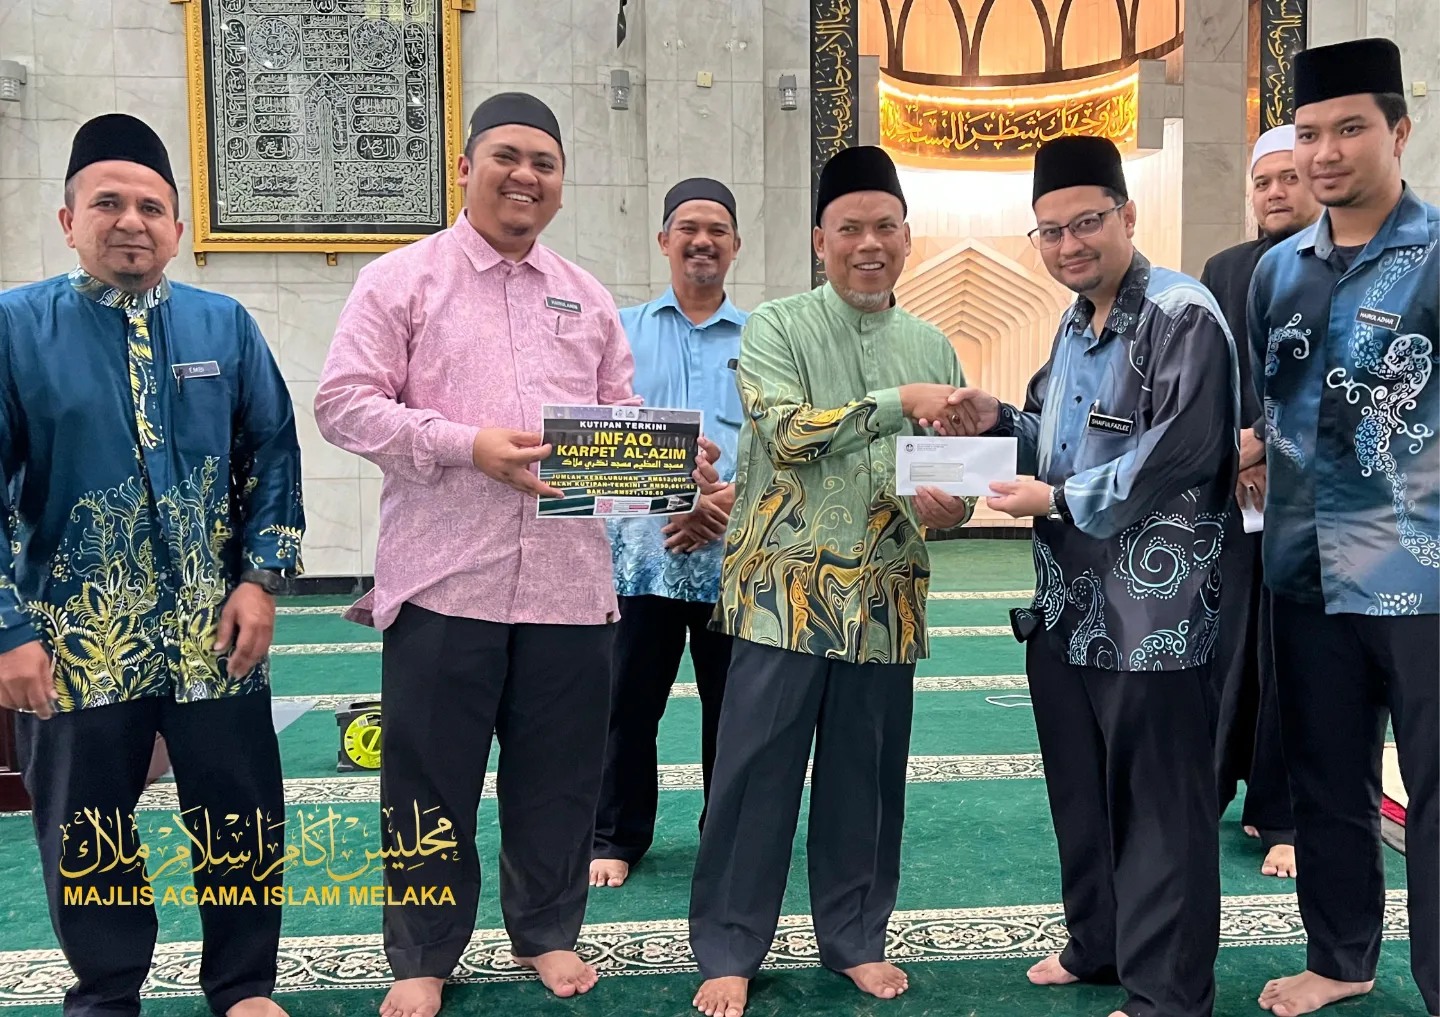 Masjid Al Azim, Masjid Negeri Menerima Sumbangan Cek Dari Majlis Agama Islam Melaka (MAIM) 